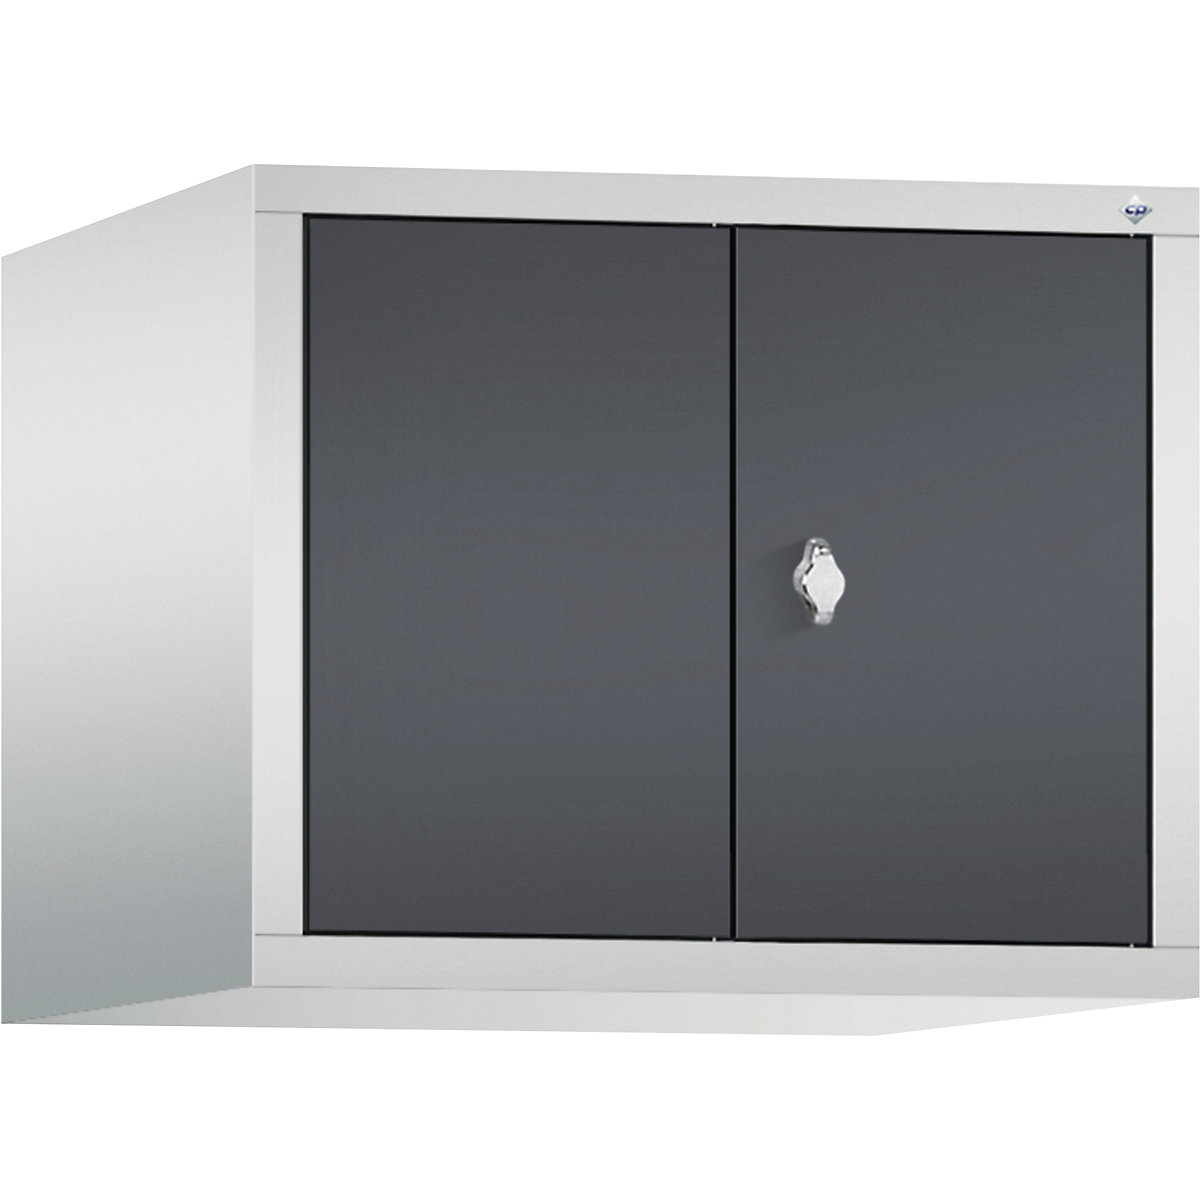 C+P – Altillo CLASSIC, puertas batientes que cierran al ras entre sí, 2 compartimentos, anchura de compartimento 300 mm, gris luminoso / gris negruzco